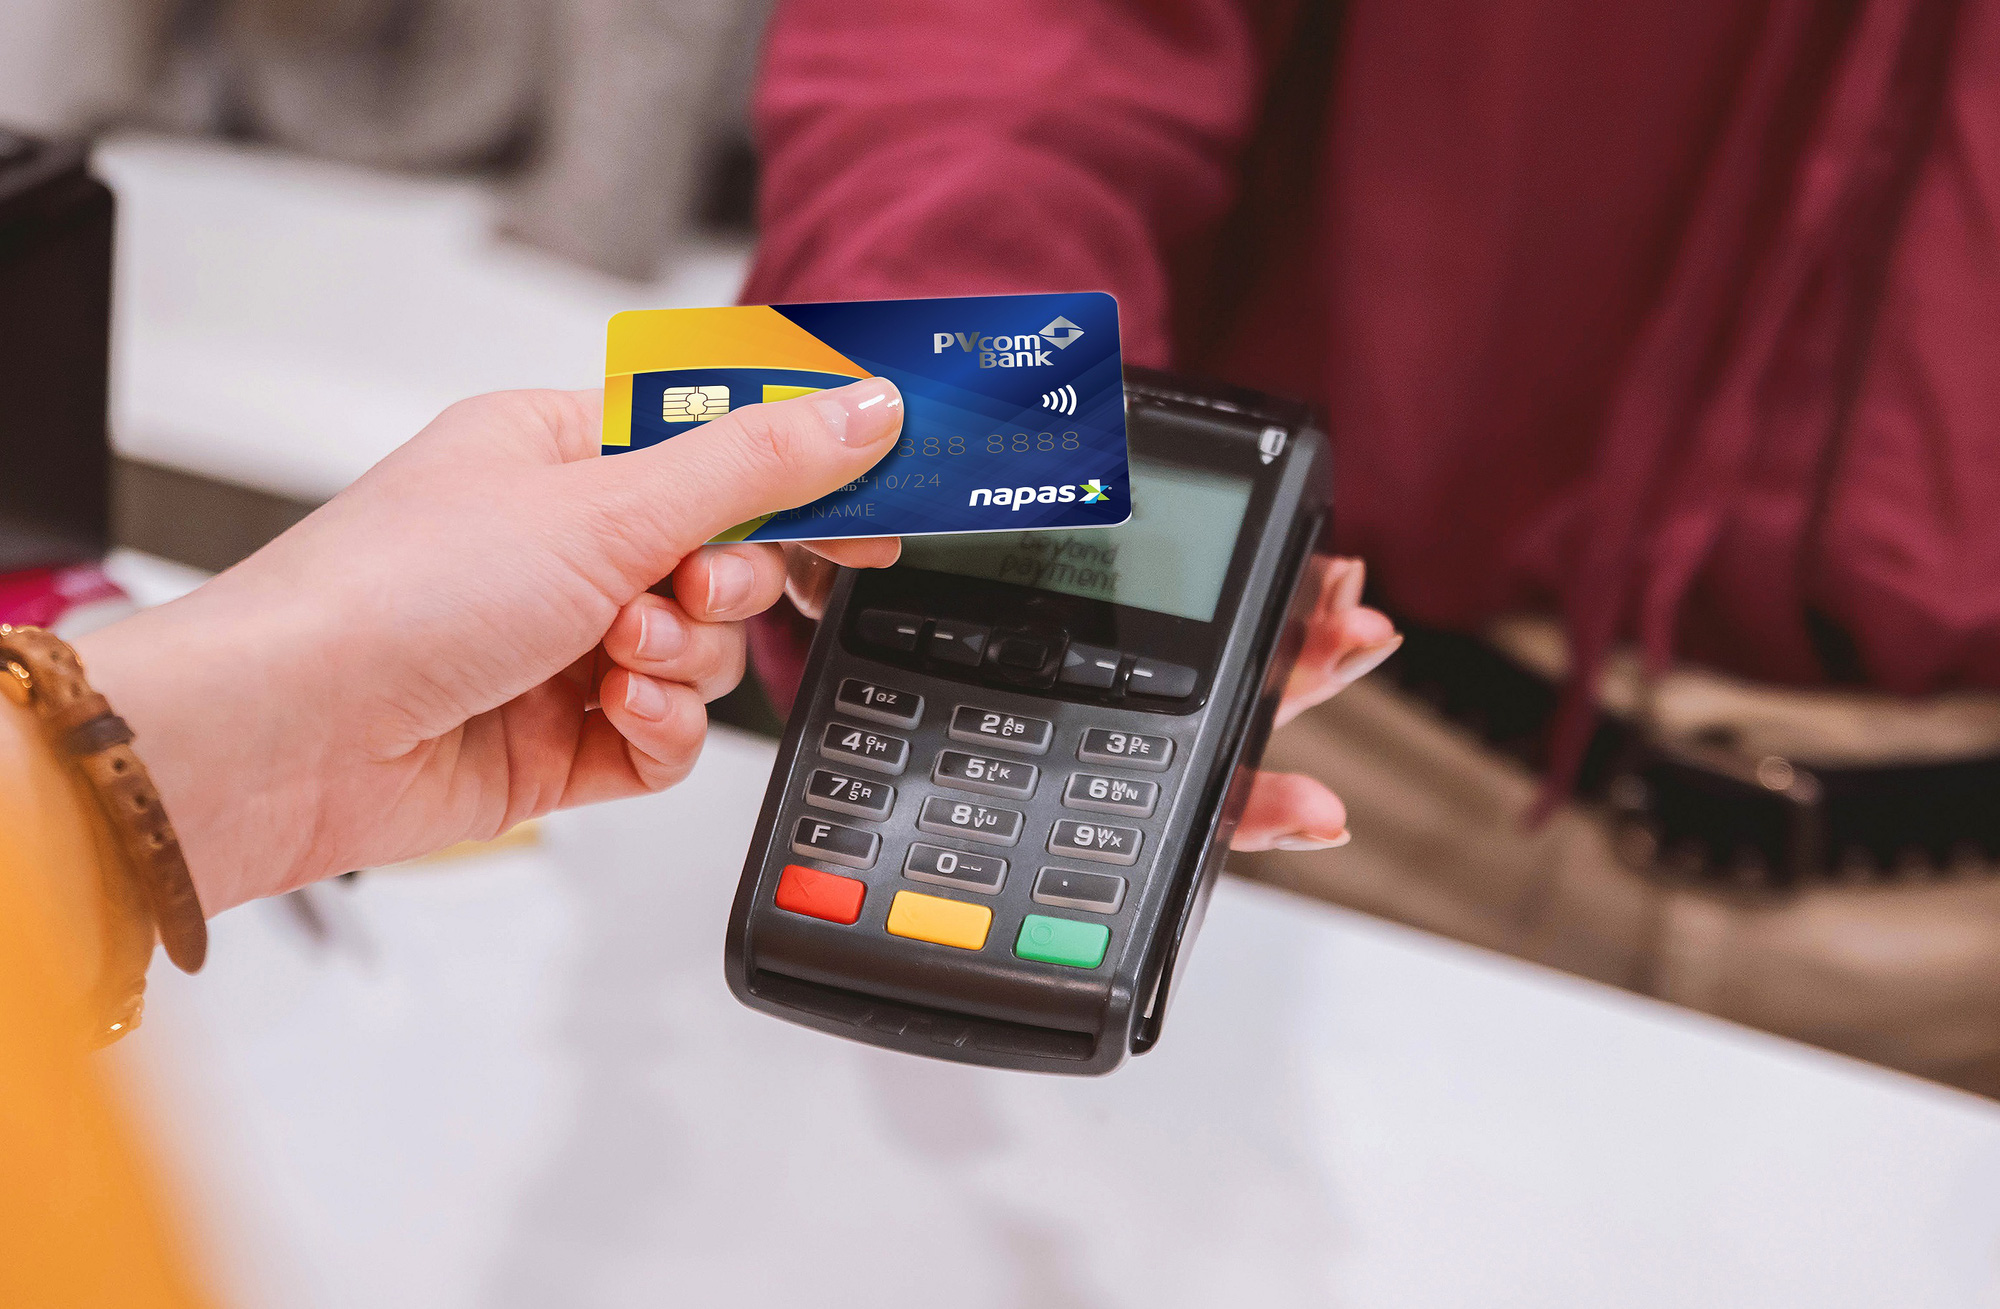 Từ ngày 31/12 thẻ từ ATM sẽ được thay thế hoàn toàn: Đây là những điều cần lưu ý khi sử dụng thẻ ATM gắn chip! - Ảnh 2.